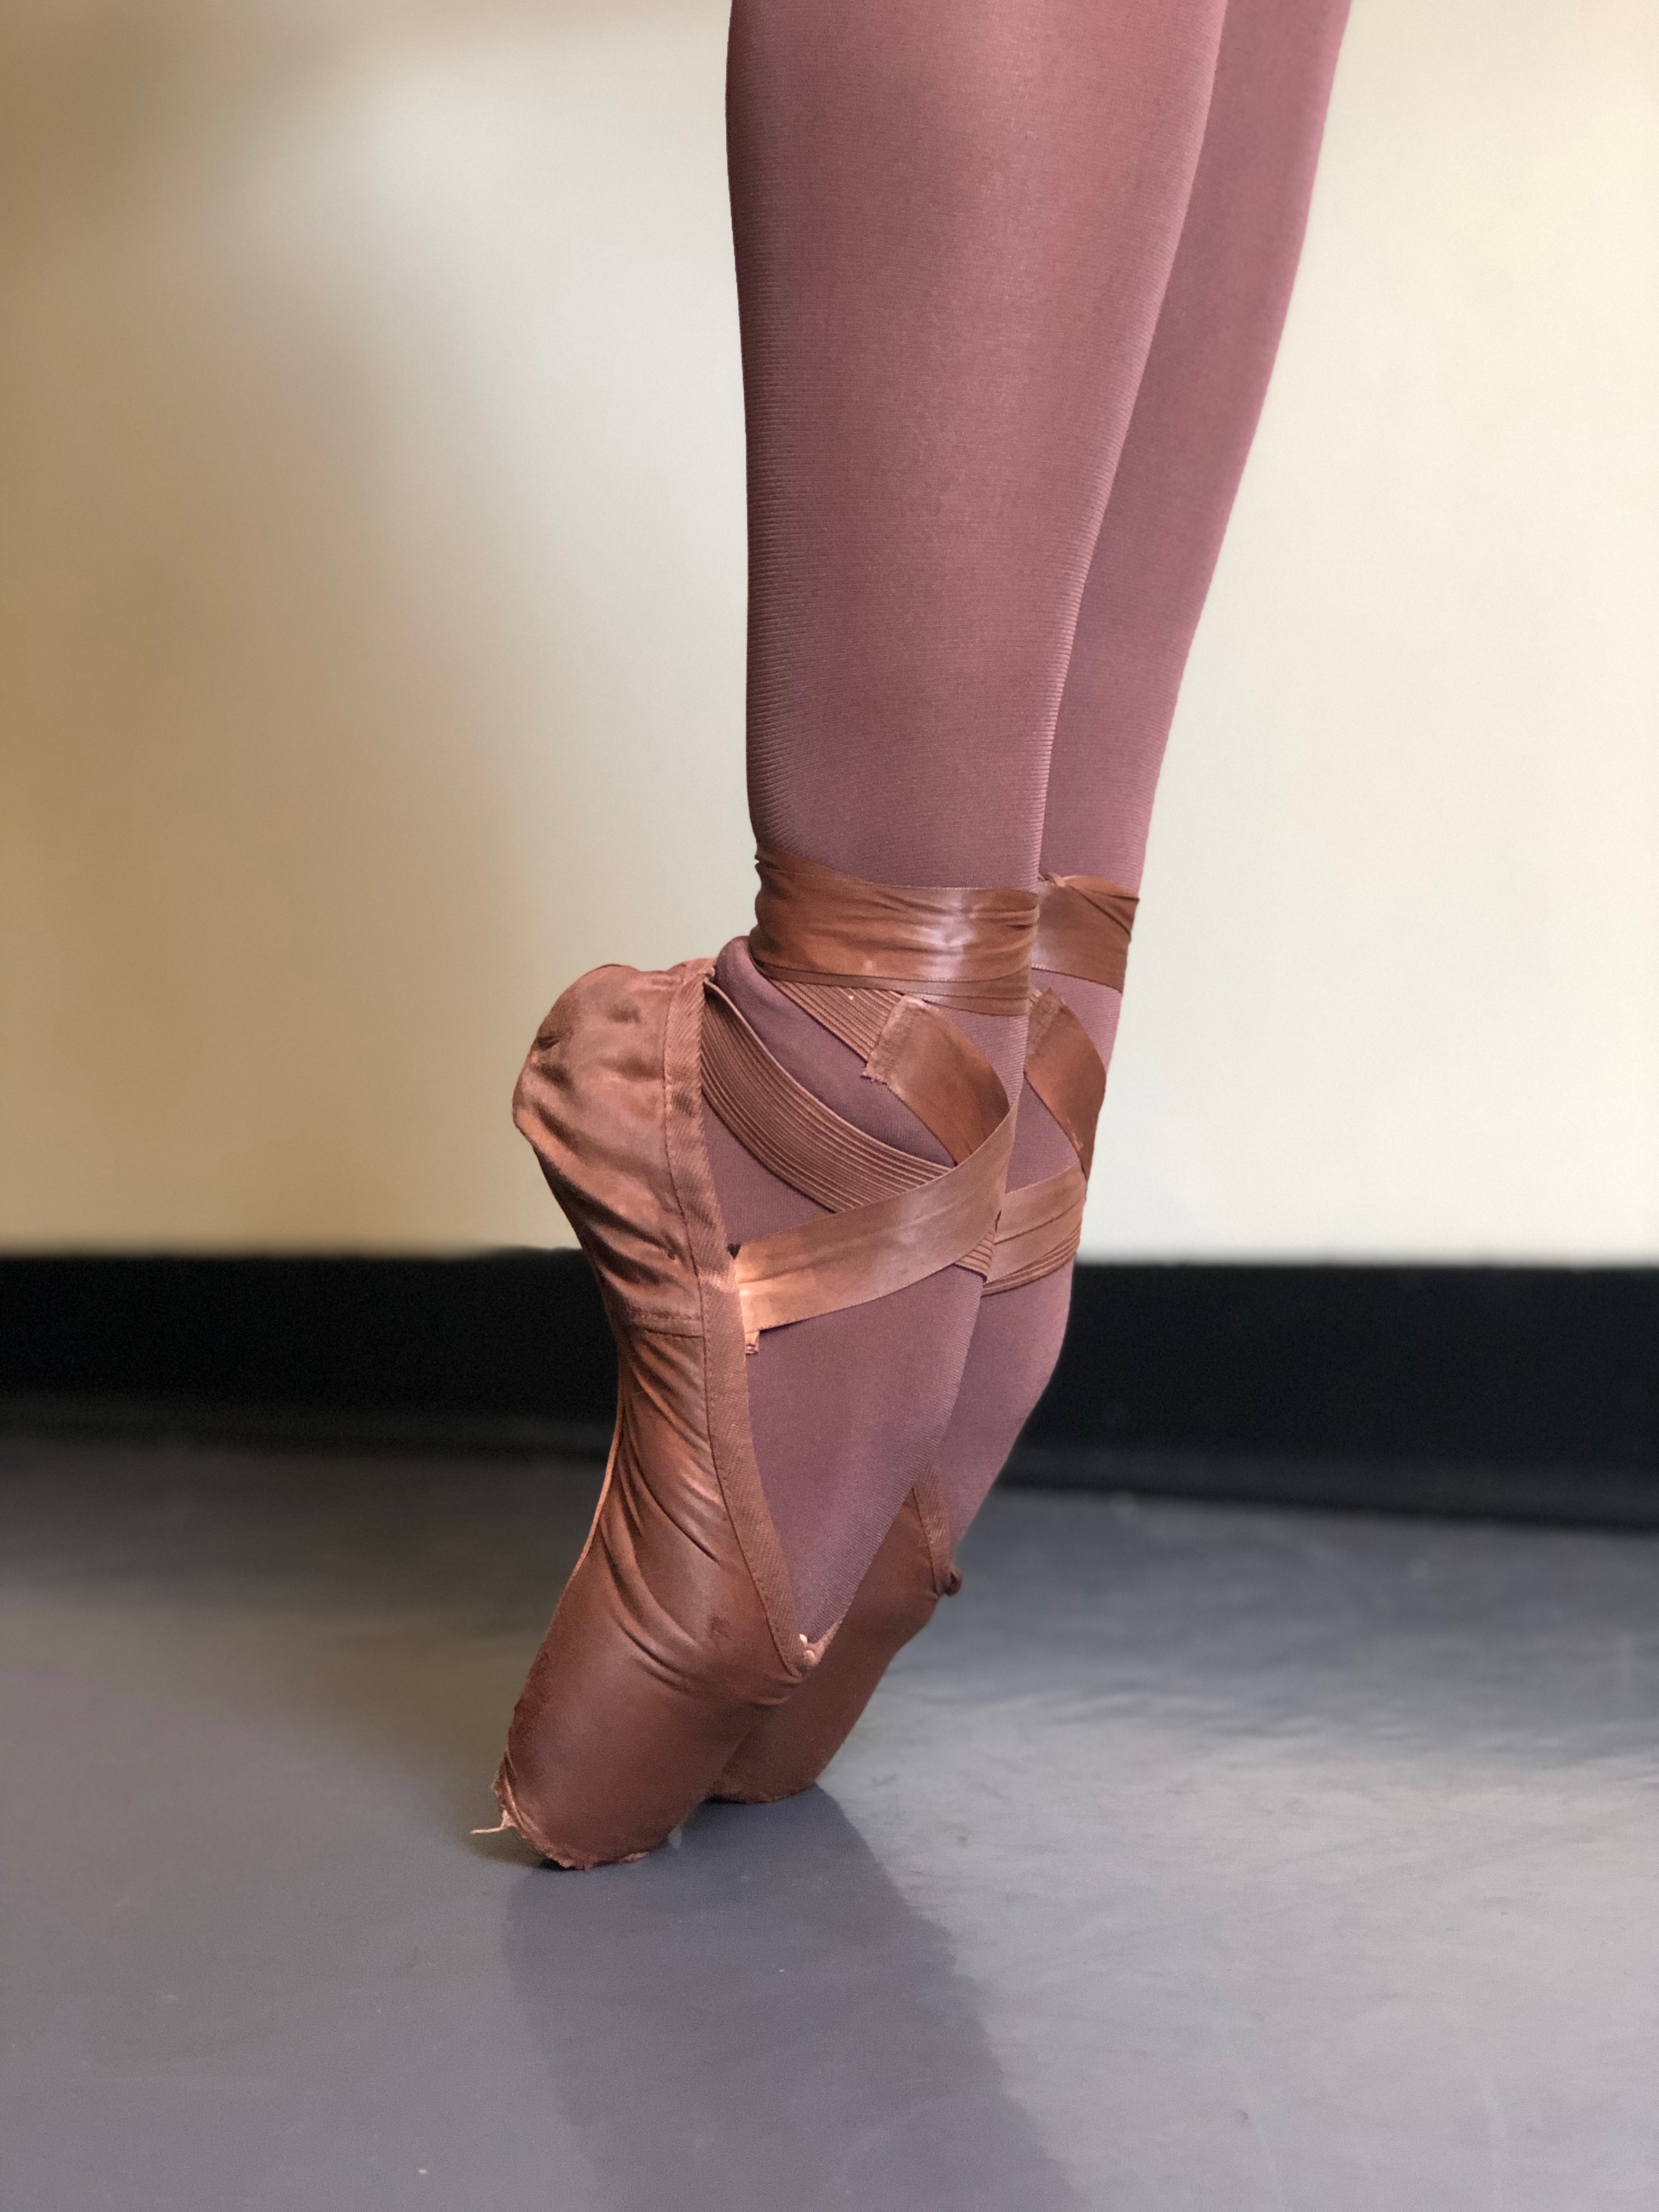 flesh tone ballet shoes